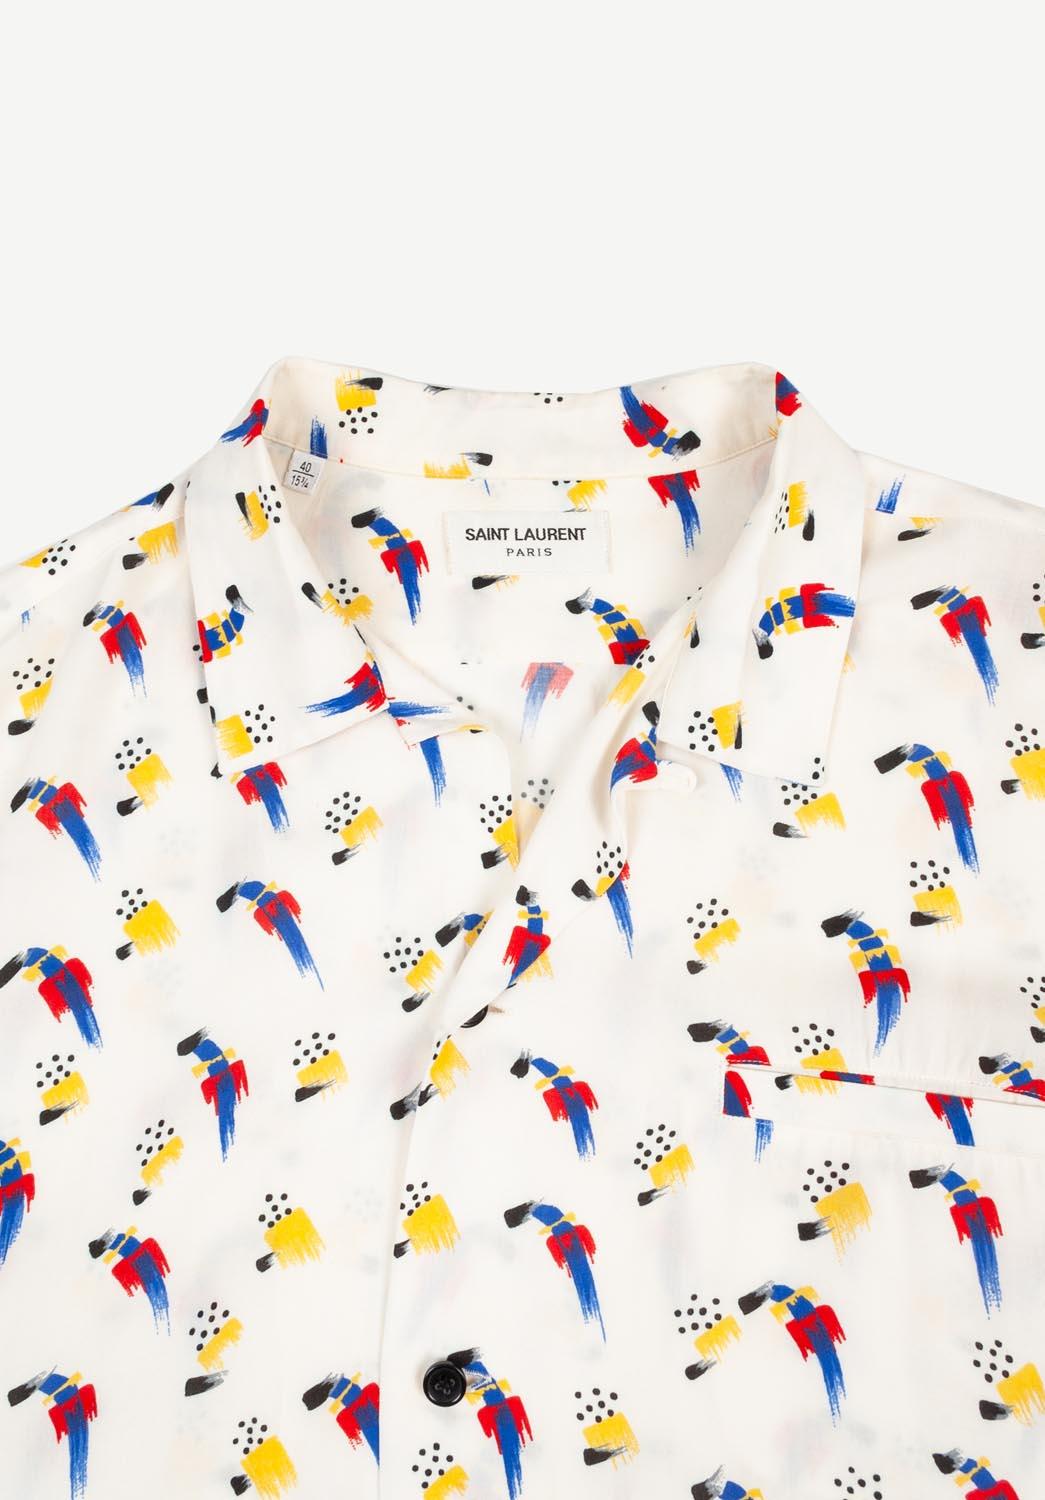 100% echtes Saint Laurent Sommerhemd, S639 
Farbe: multi
(Eine tatsächliche Farbe kann ein wenig variieren aufgrund individueller Computer-Bildschirm Interpretation)
MATERIAL: 100% Viskose
Tag Größe: Groß
Dieses Hemd ist von hervorragender Qualität.